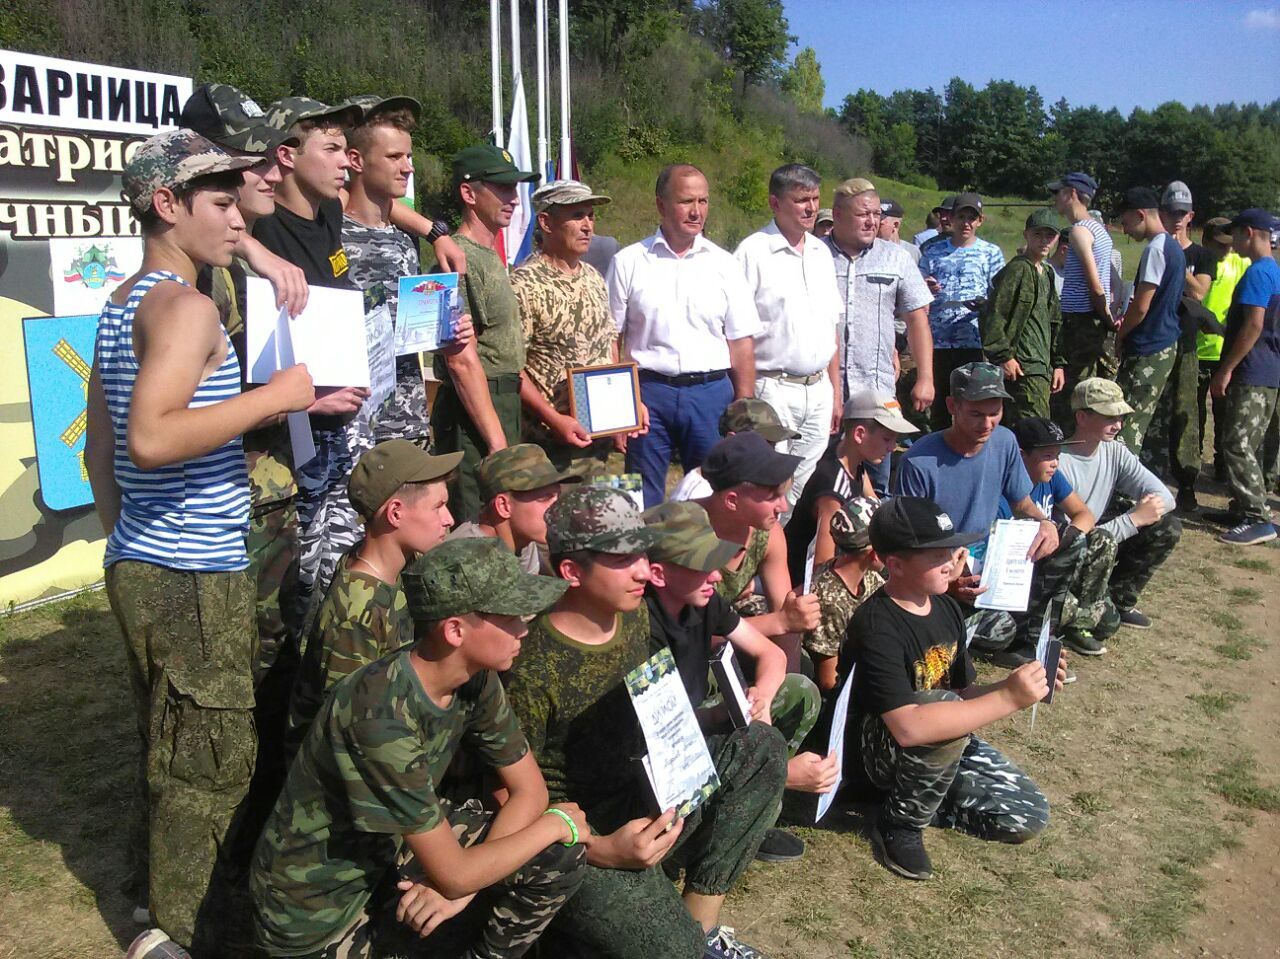 Юные заинцы отдохнули в Республиканском военно-спортивном лагере «Зарница»